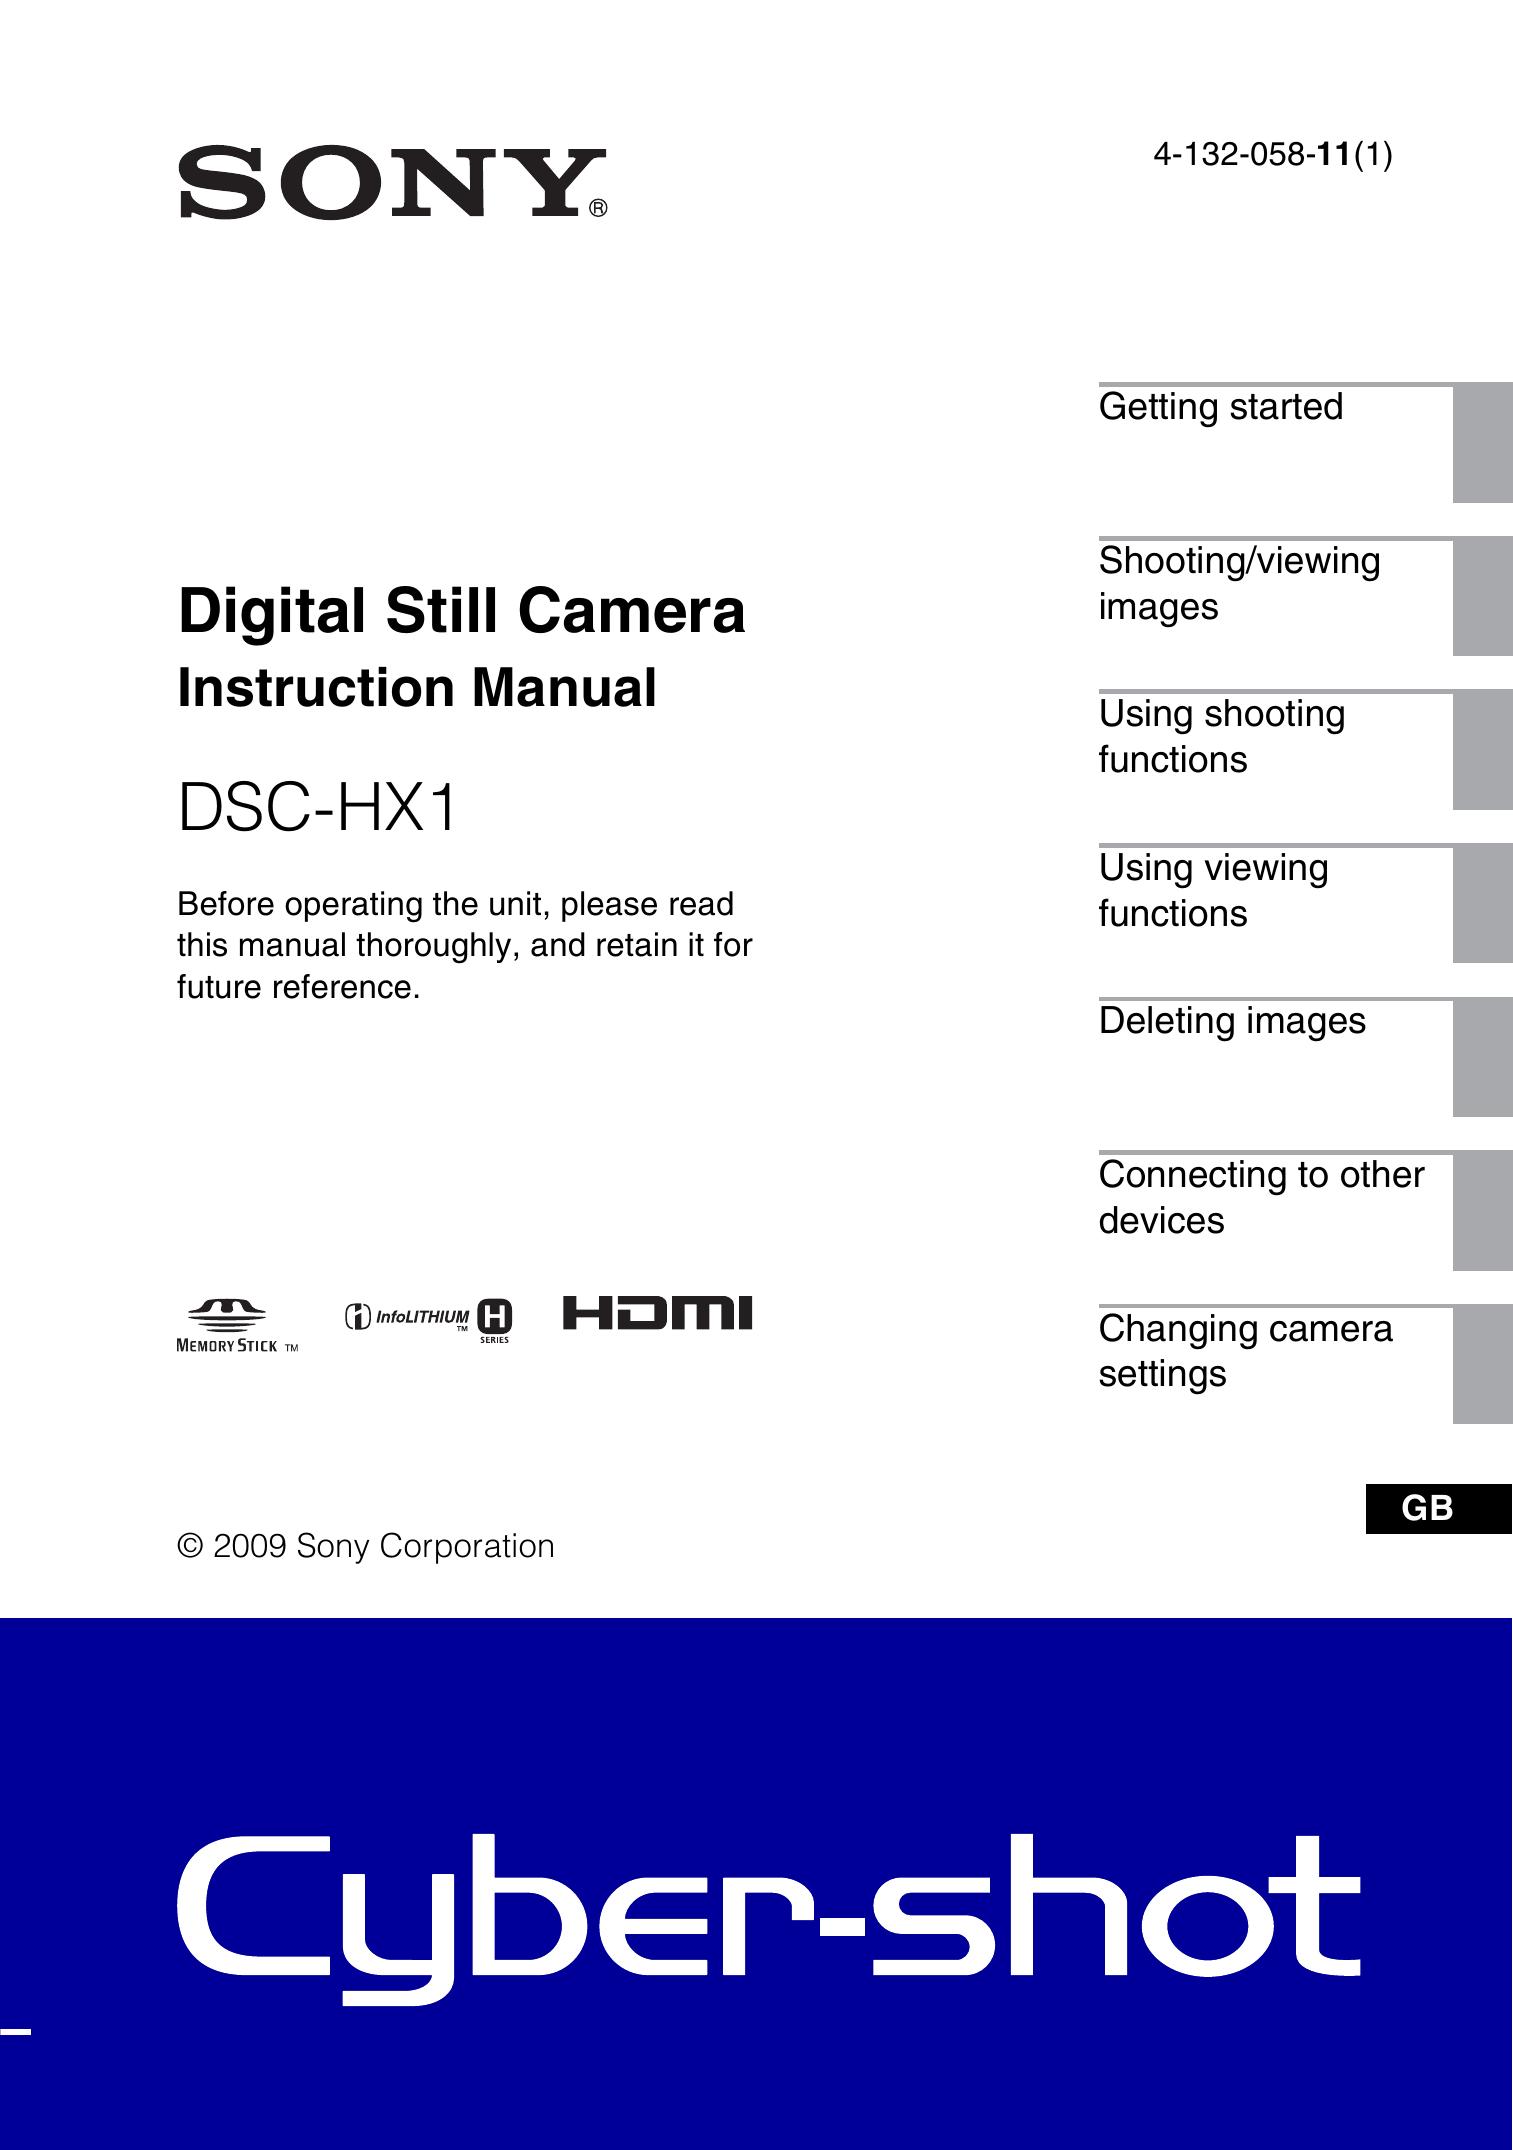 Sony 4-132-058-11(1) Digital Camera User Manual